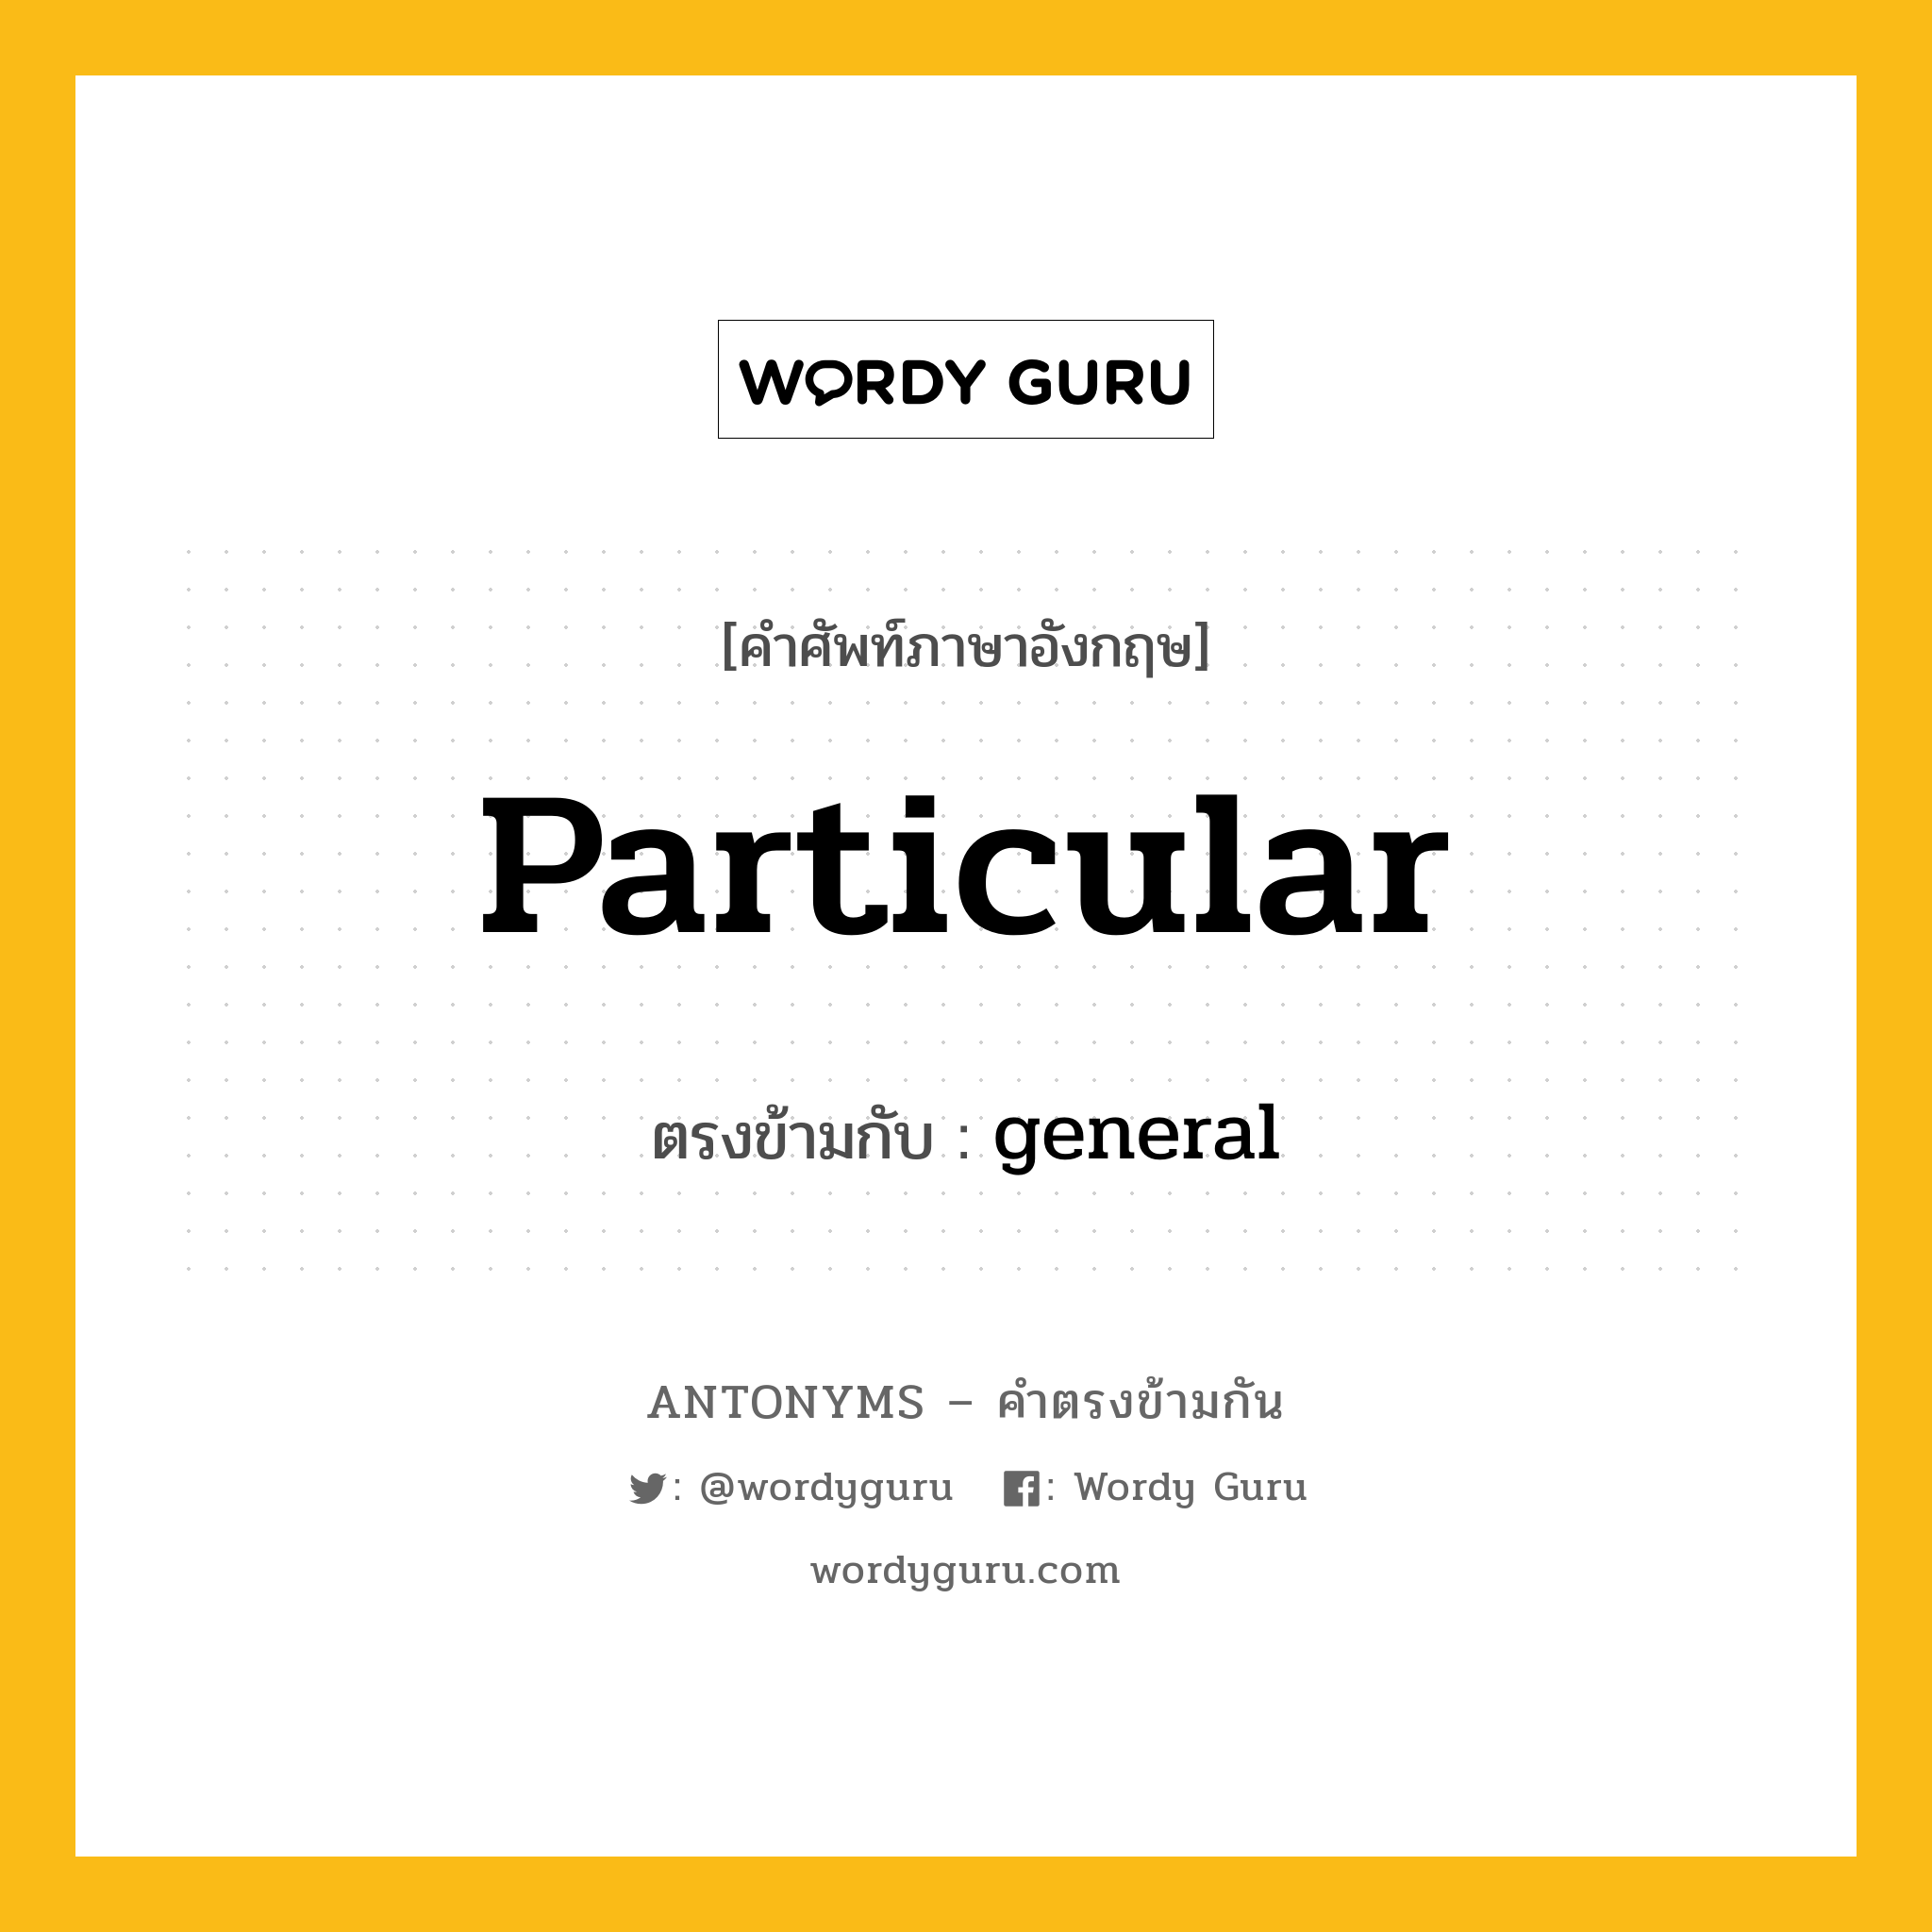 particular เป็นคำตรงข้ามกับคำไหนบ้าง?, คำศัพท์ภาษาอังกฤษ particular ตรงข้ามกับ general หมวด general